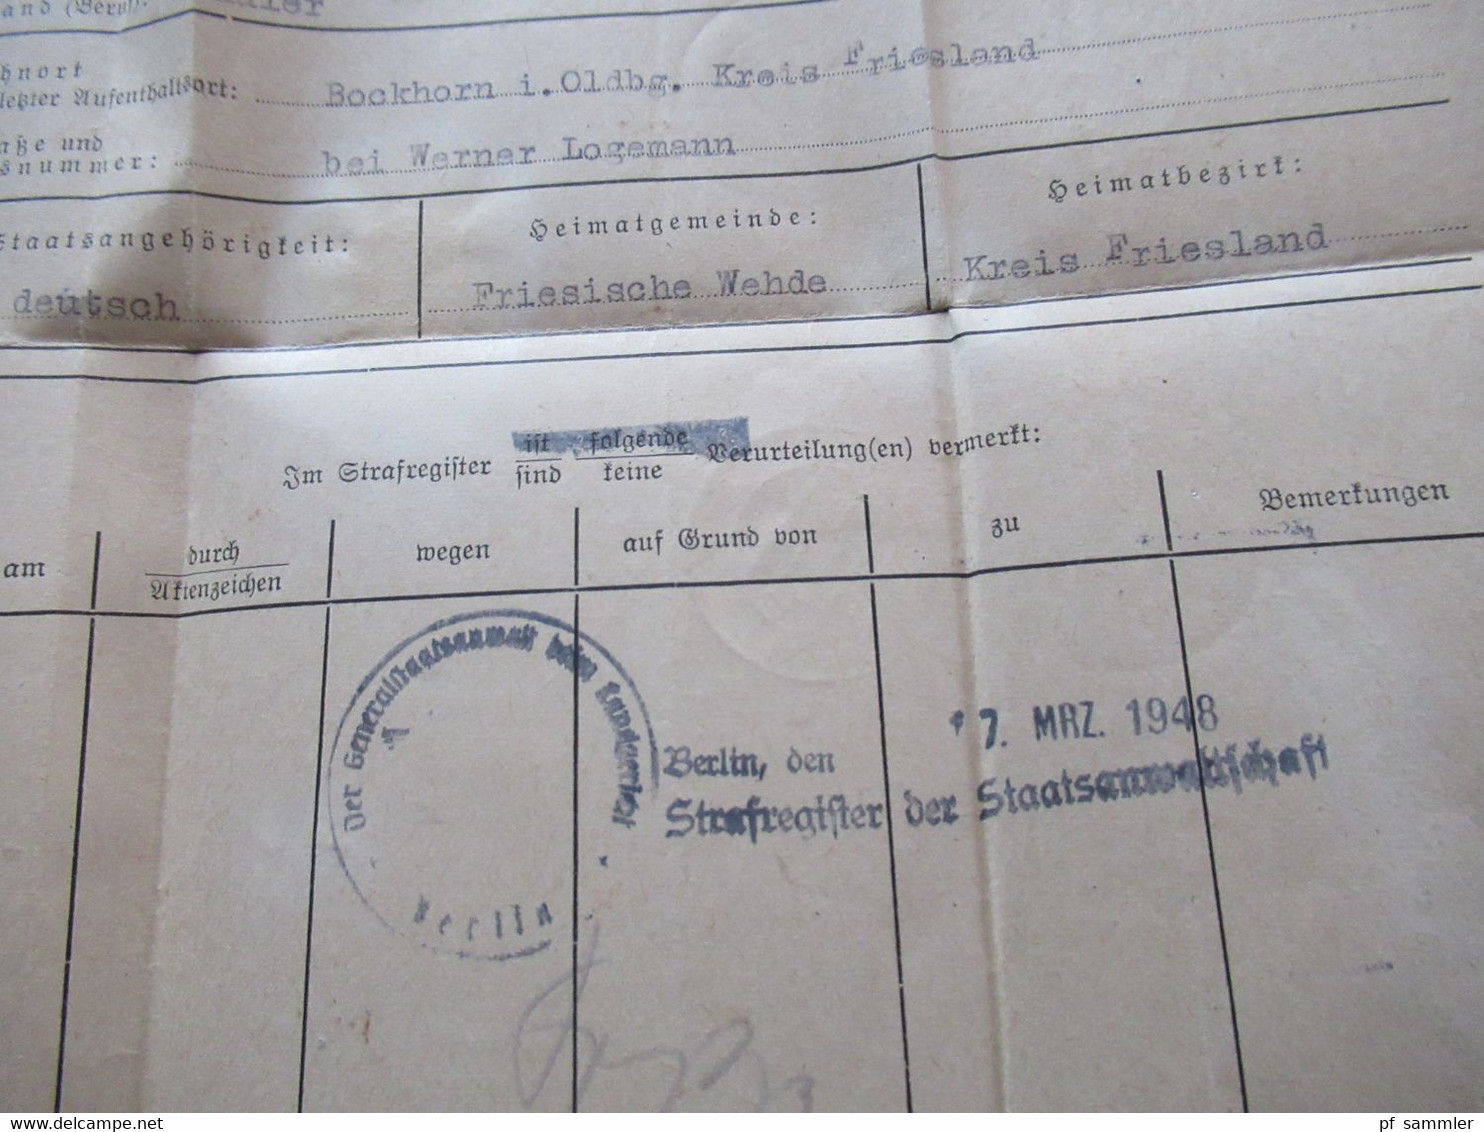 All. Besetzung Berlin 19.3.1948 Absender Strafregister der Staatsanwaltschaft Berlin nach Bockhorn in Oldenburg